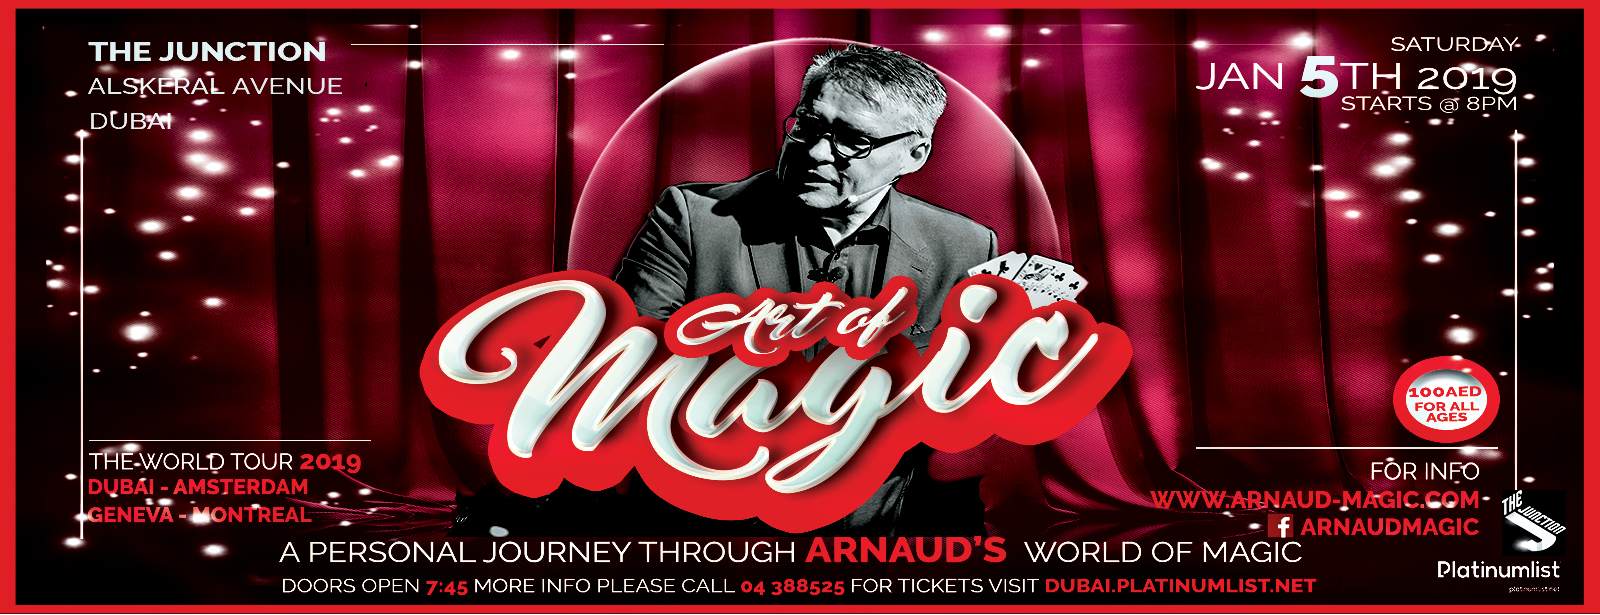 The Art Of Magic by Arnaud - Coming Soon in UAE